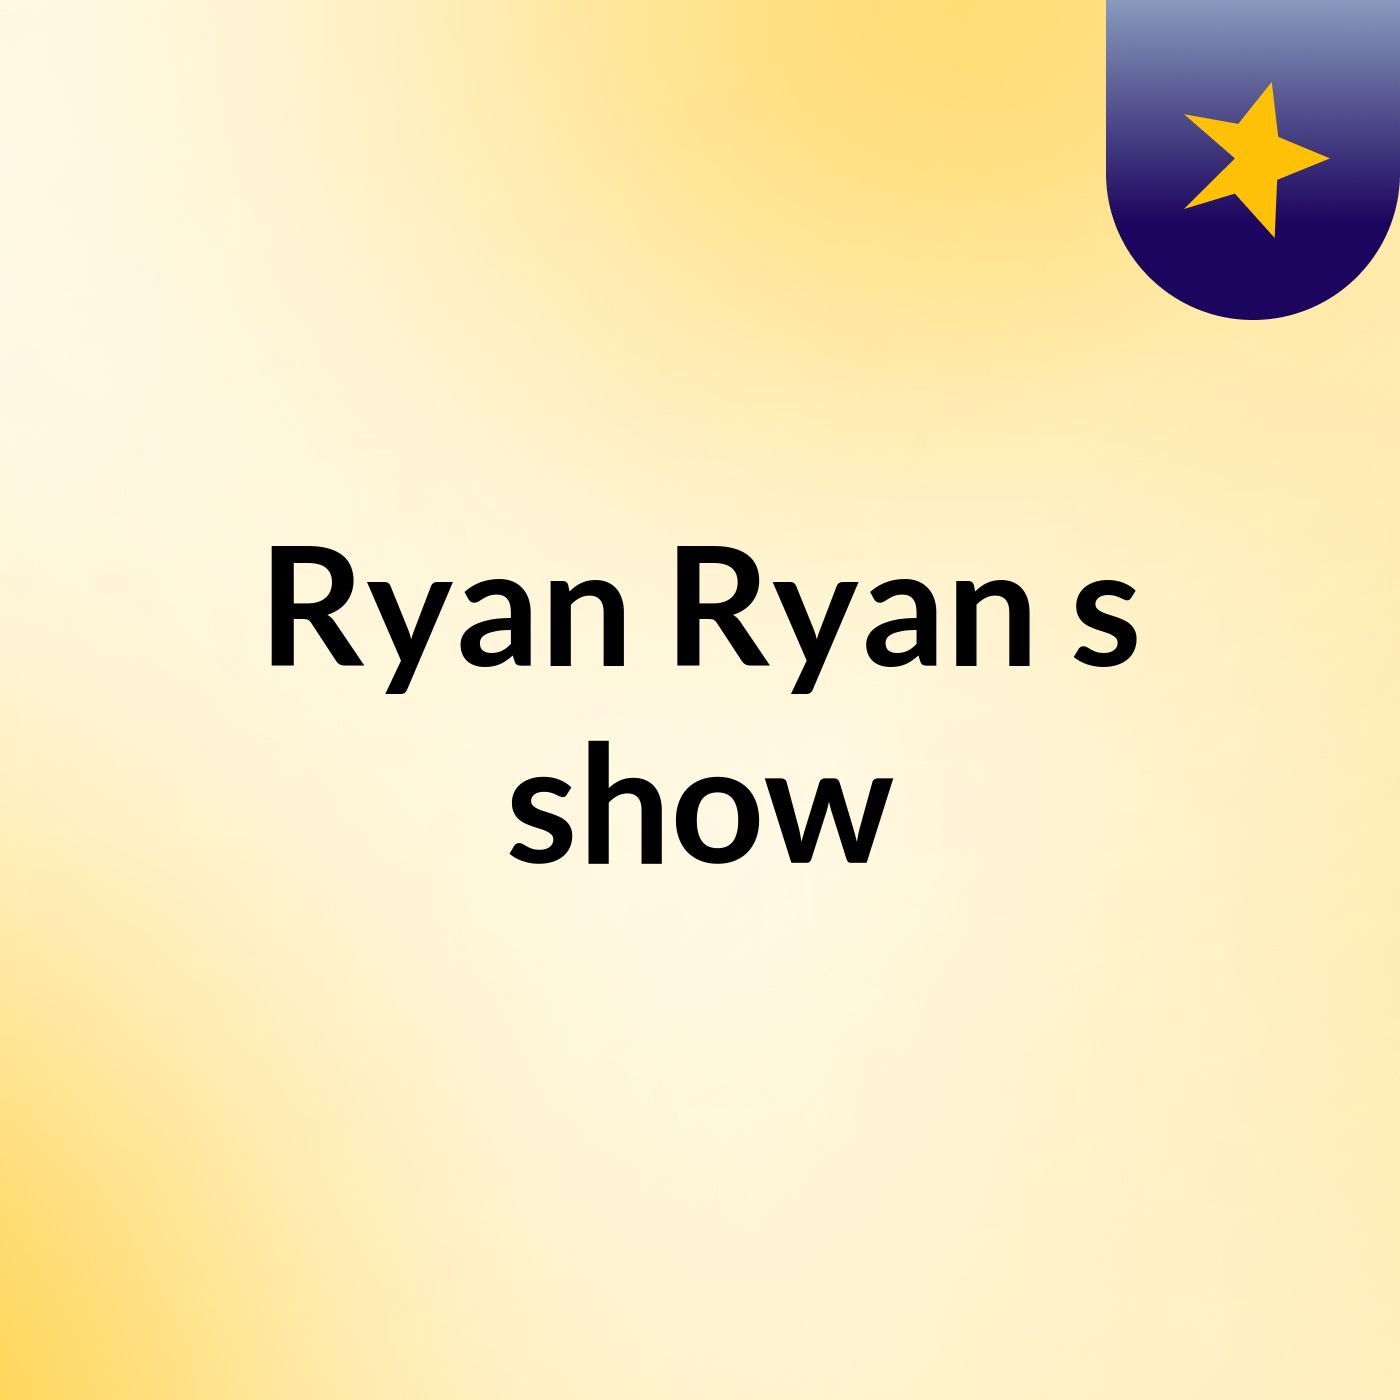 Ryan Ryan's show